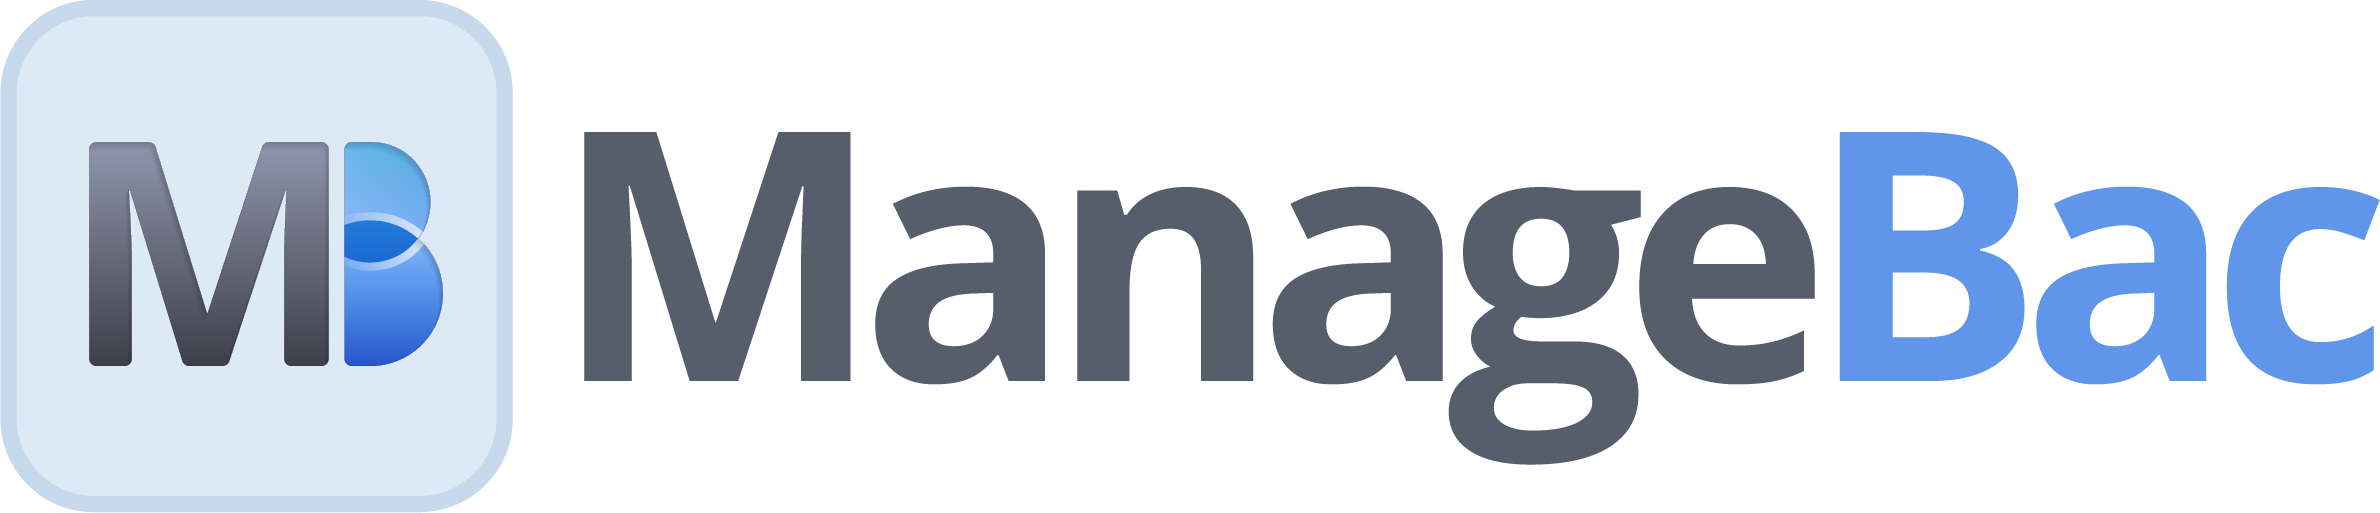 managebac logo